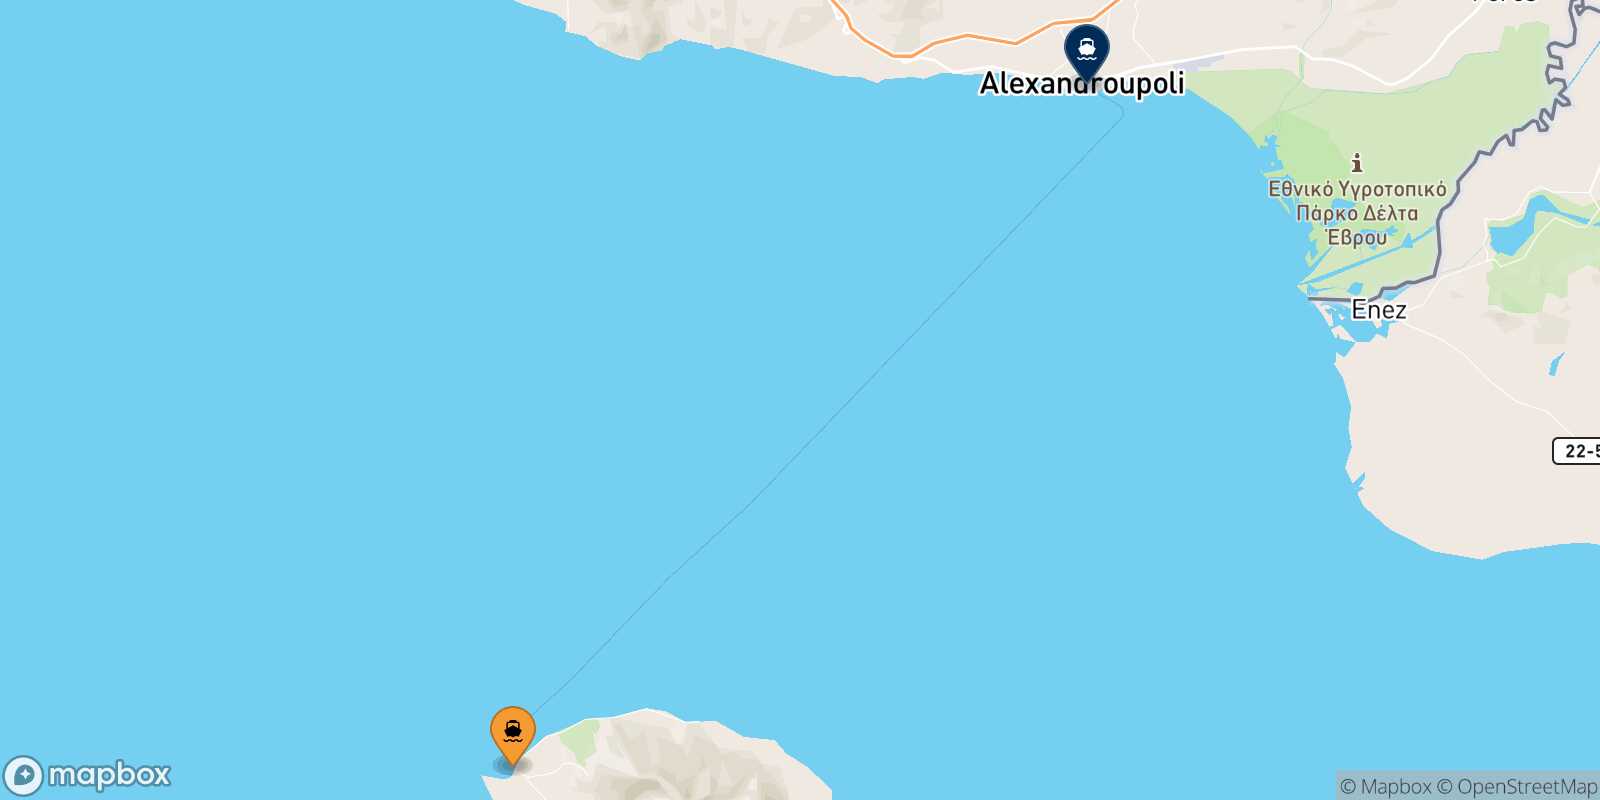 Samothraki Alexandroupoli route map